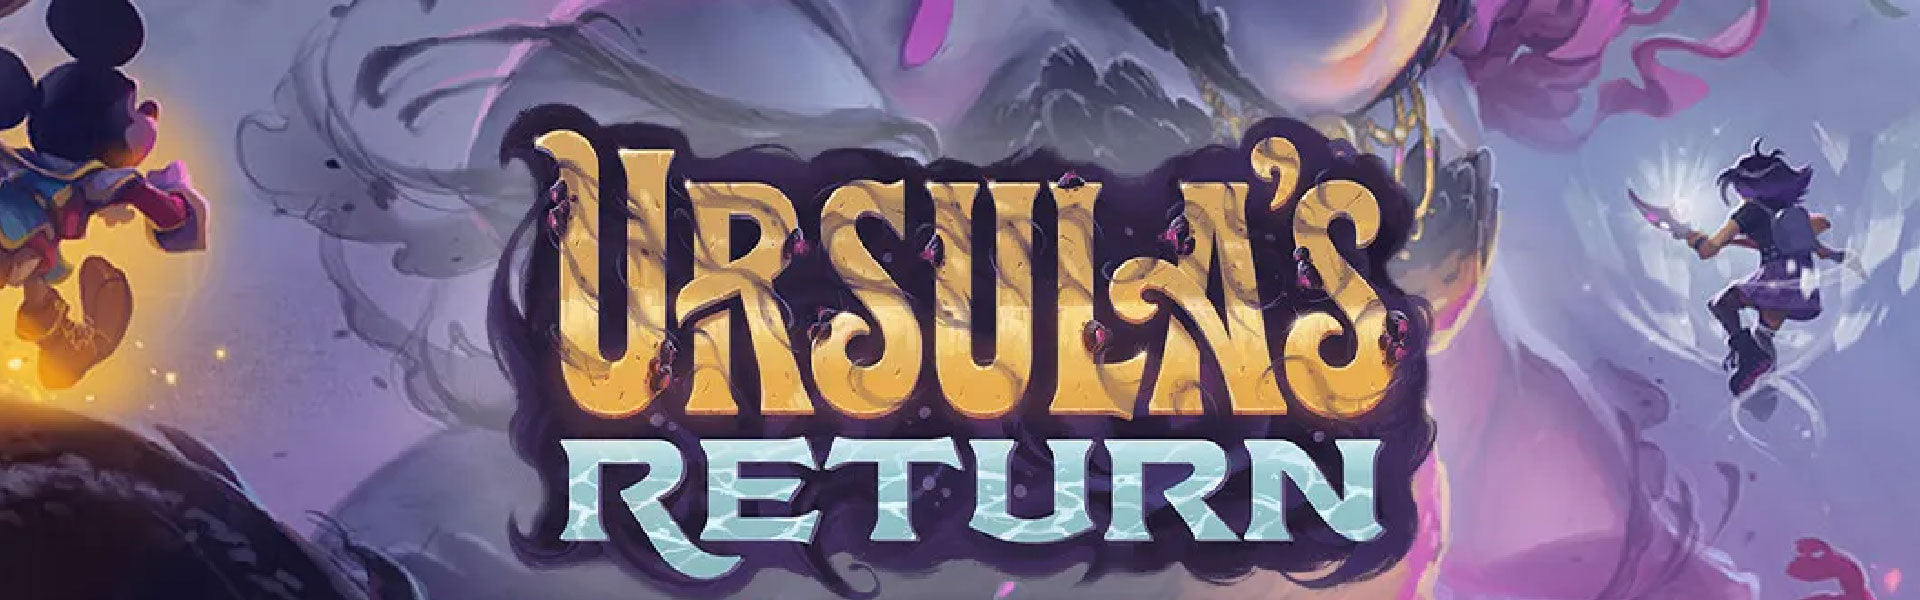 Ursula return